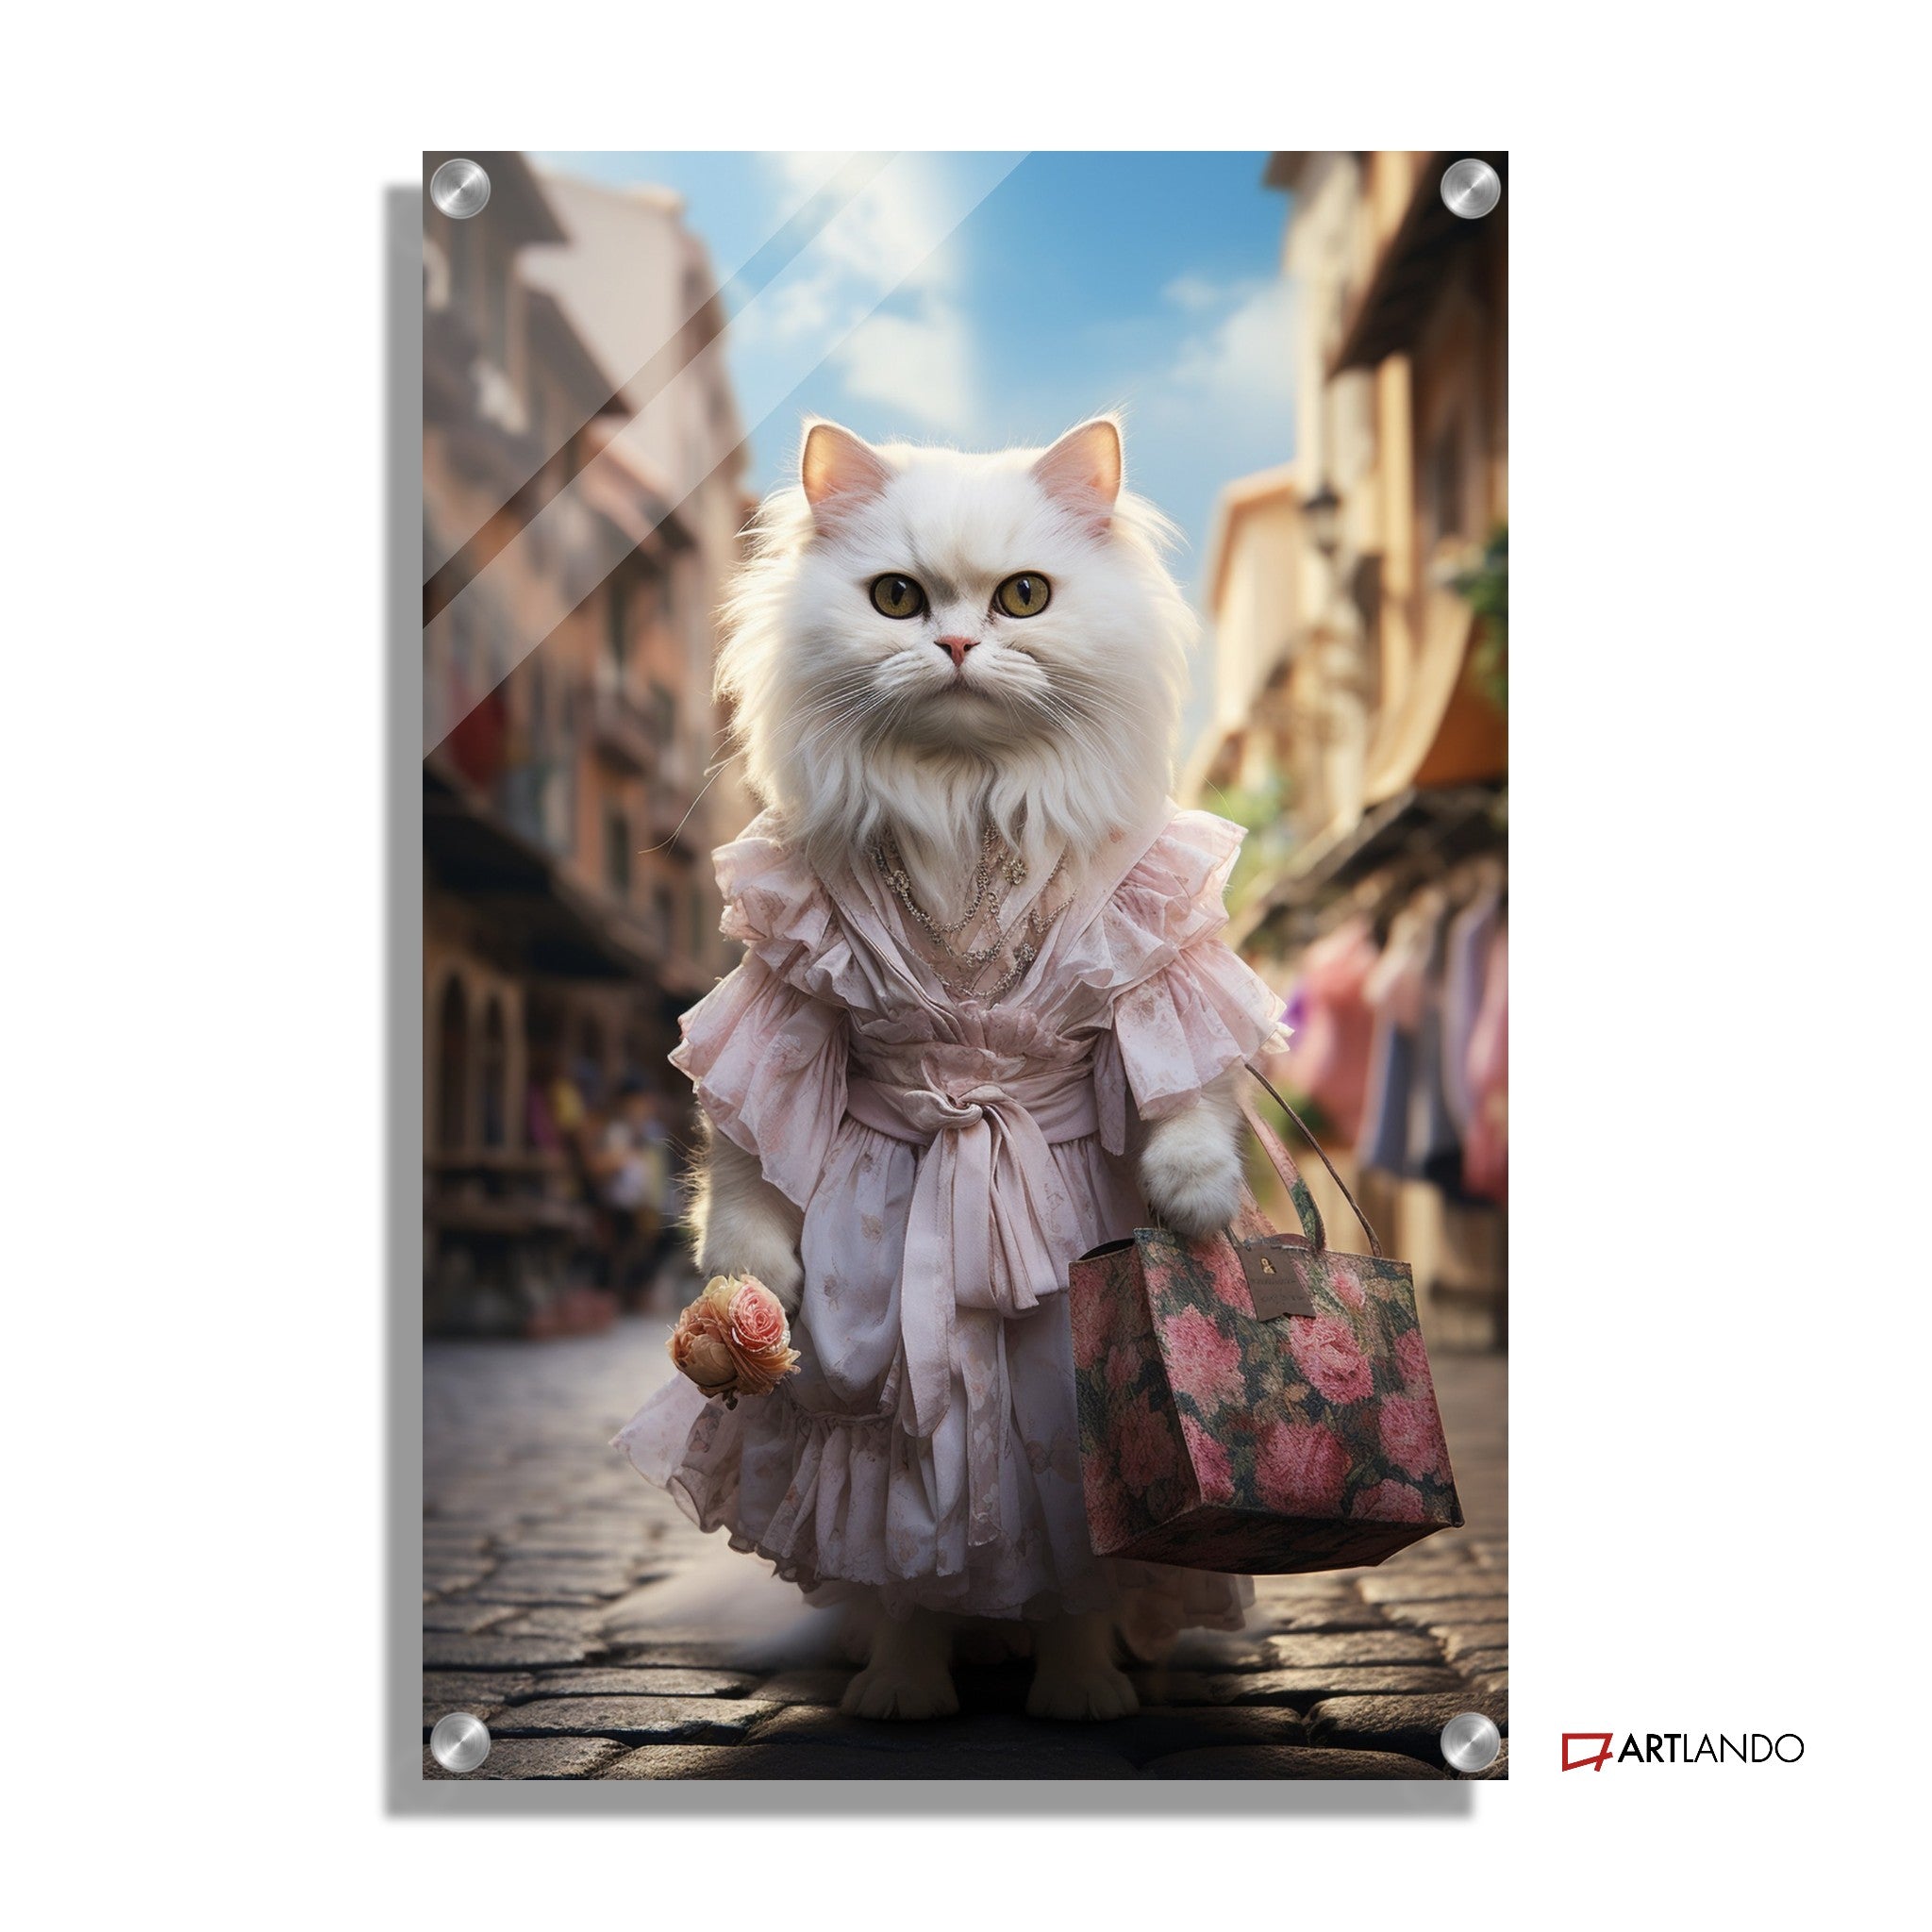 Katzendame in süßem Kleid spaziert durch Innenstadt